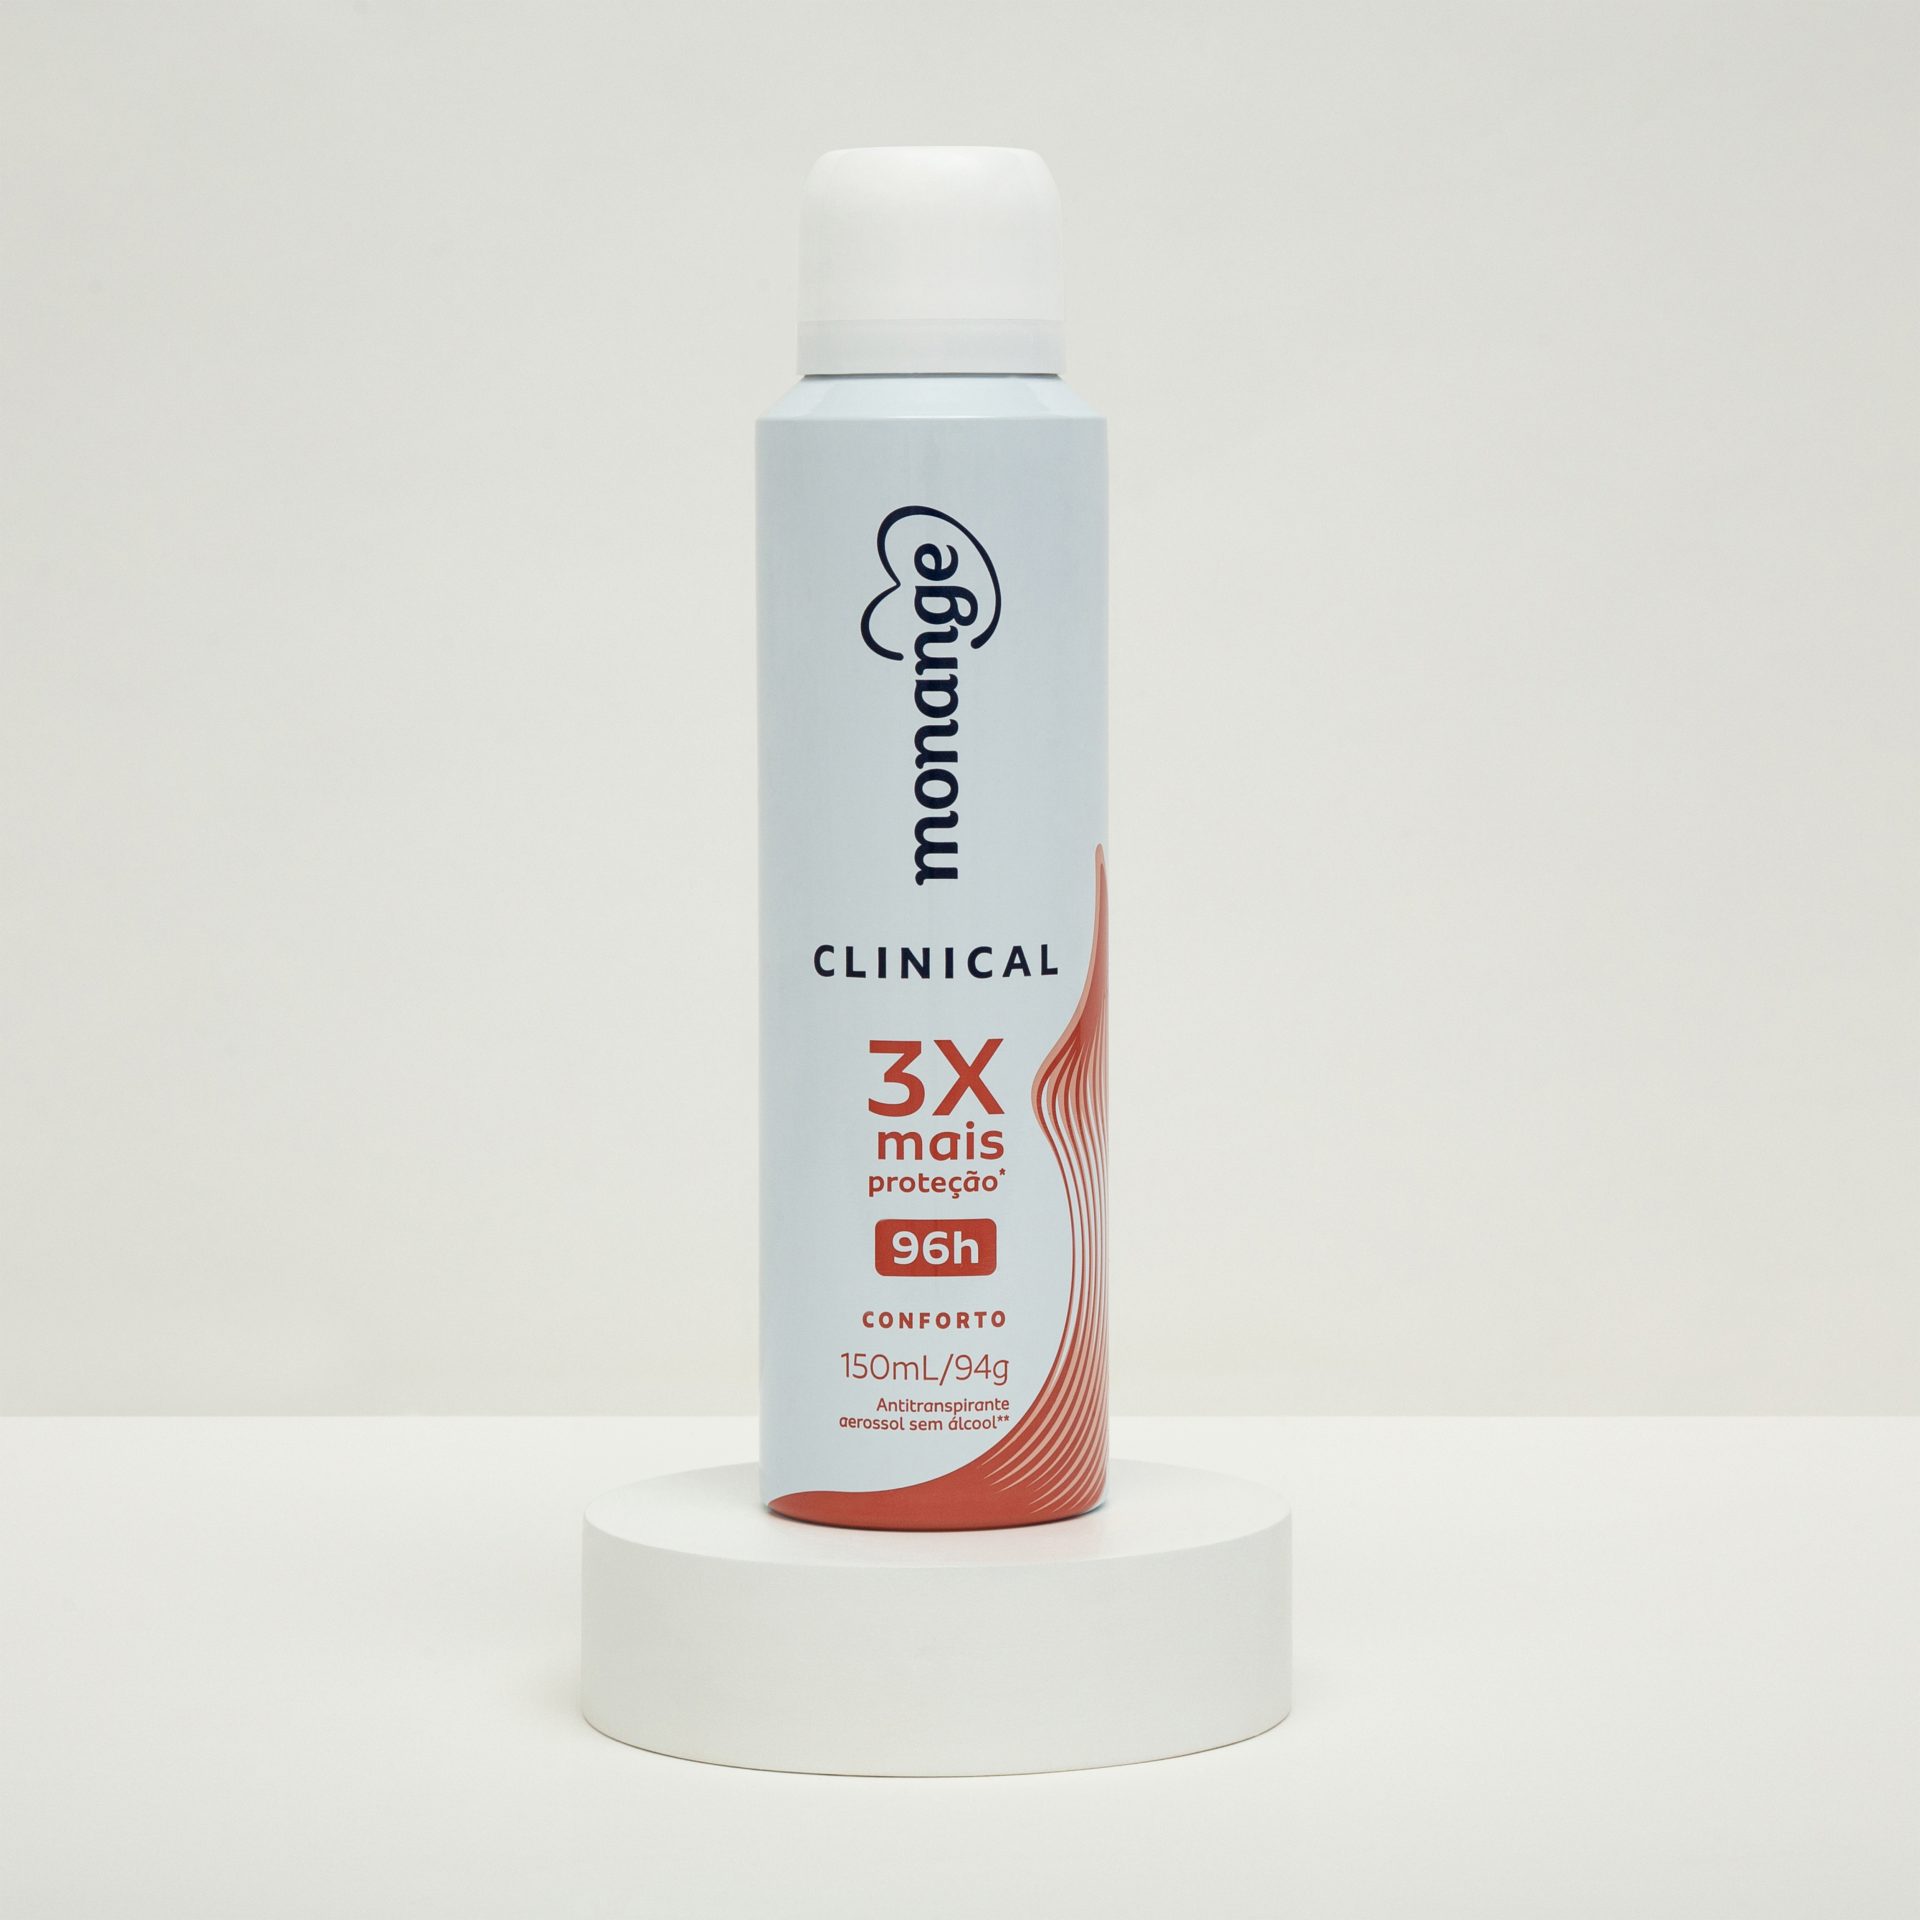 Desodorante ou antitranspirante clinical da Monange, com frasco branco e detalhes em vermelho.